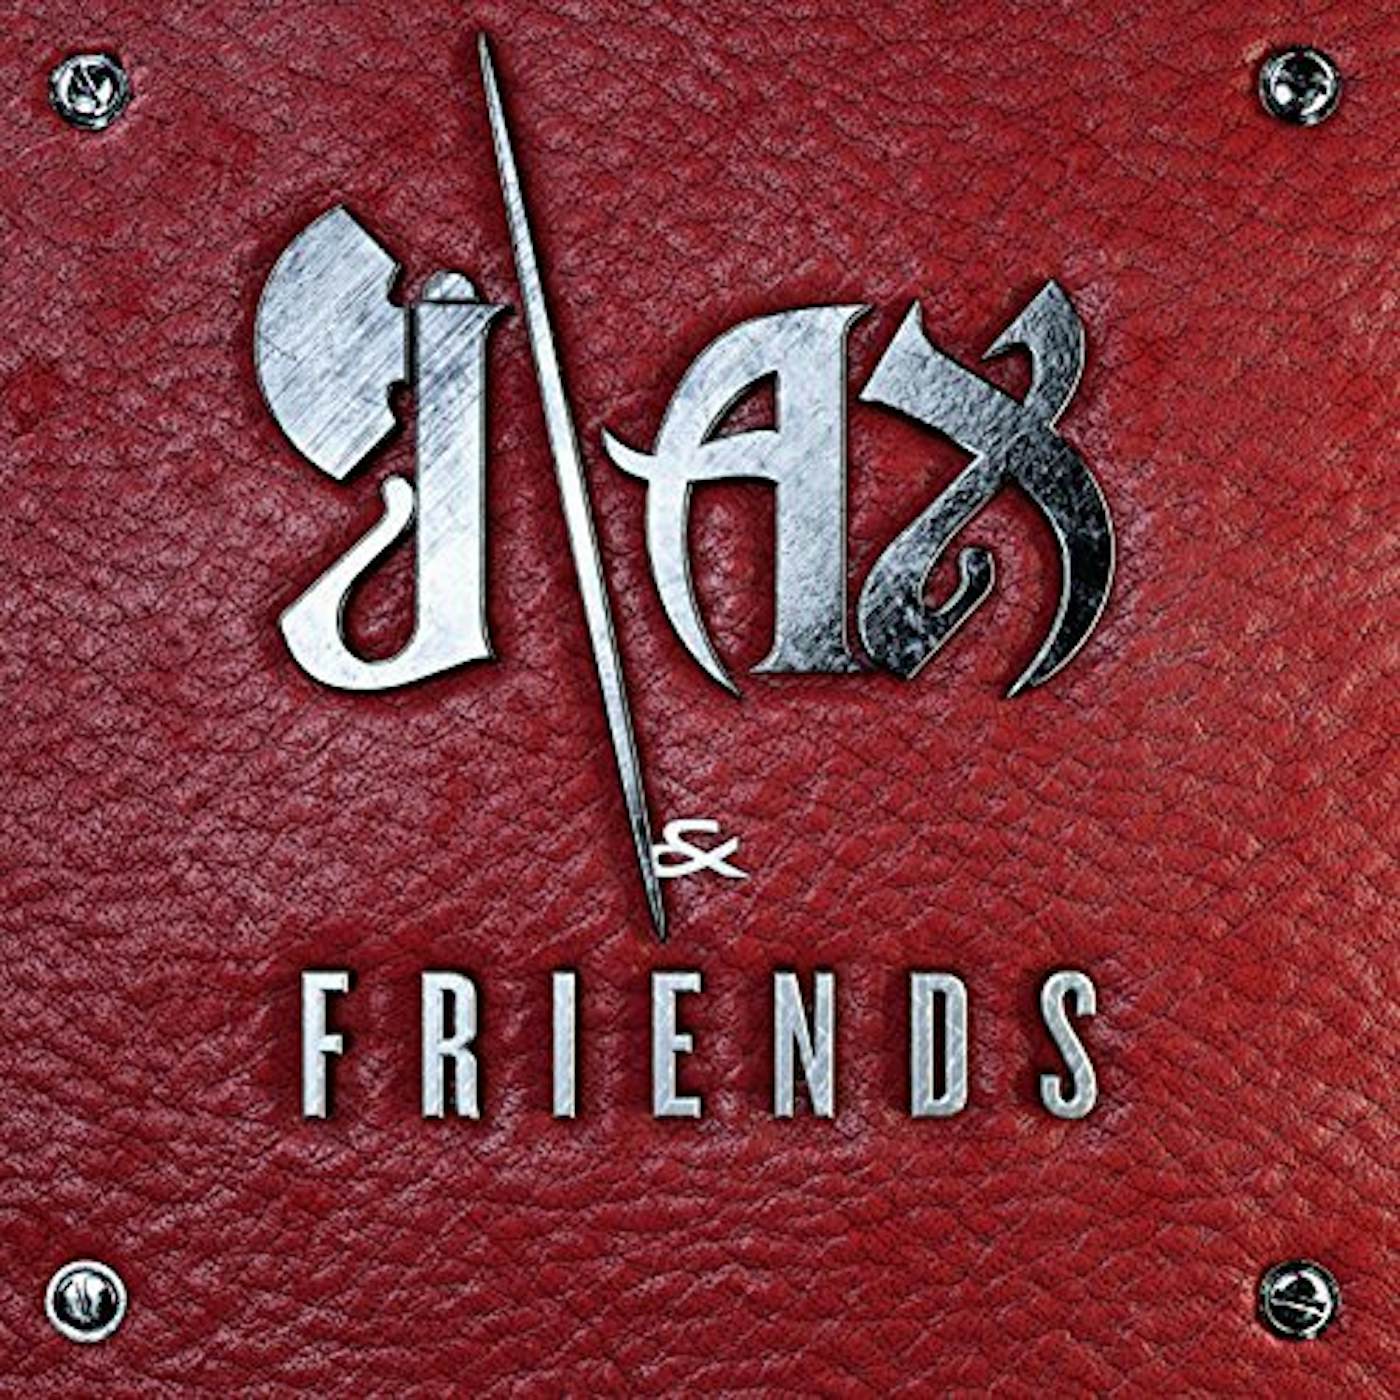 J-AX & FRIENDS CD